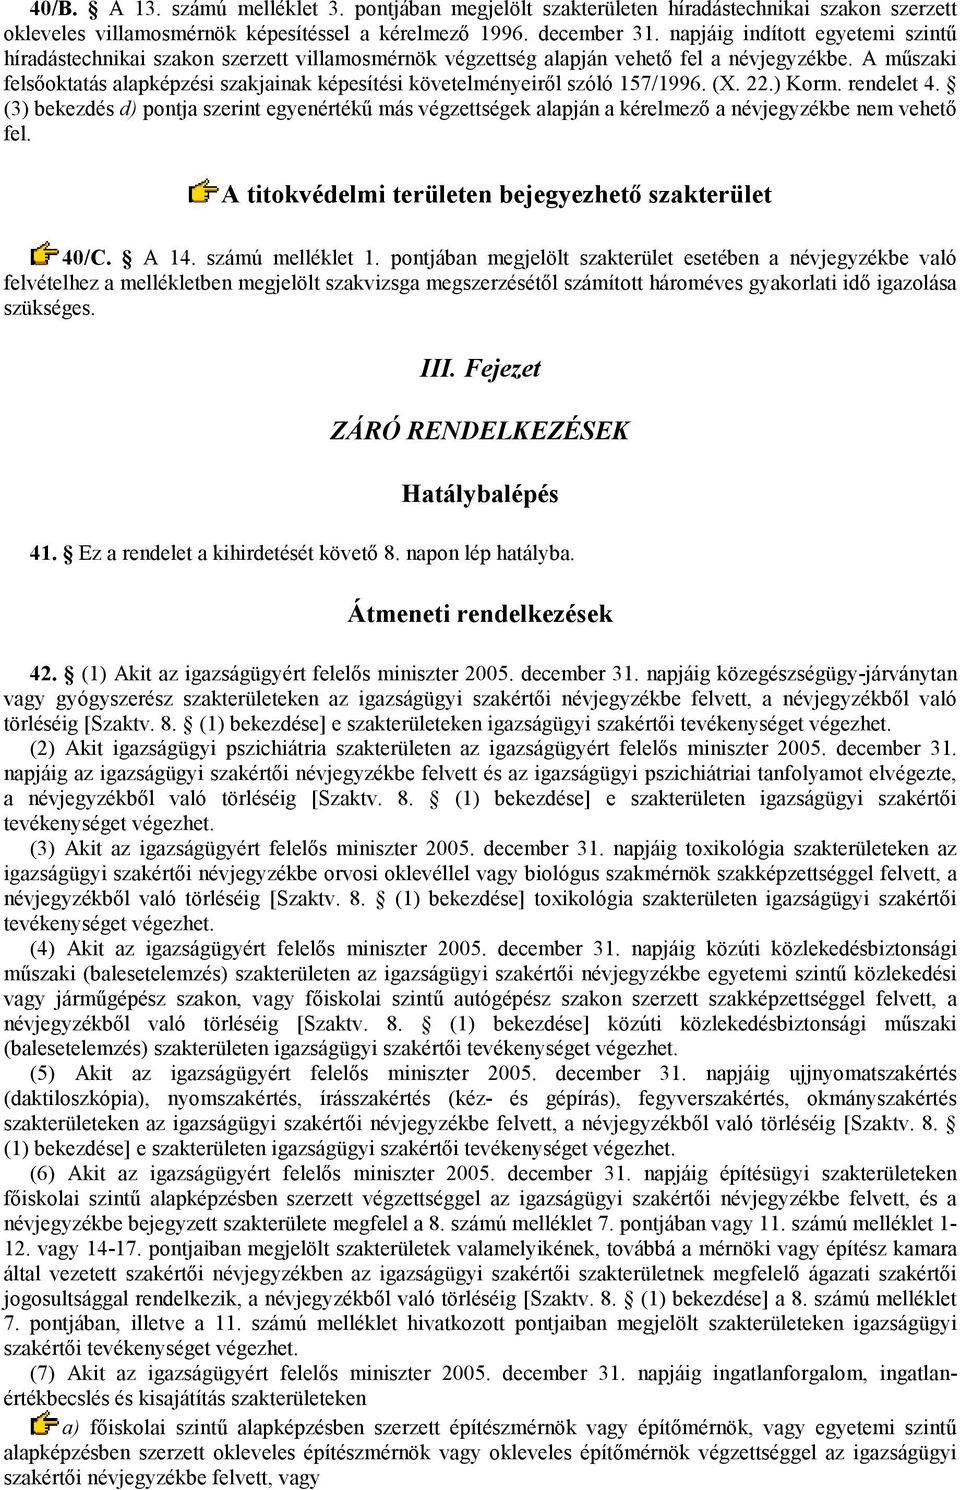 A mőszaki felsıoktatás alapképzési szakjainak képesítési követelményeirıl szóló 157/1996. (X. 22.) Korm. rendelet 4.